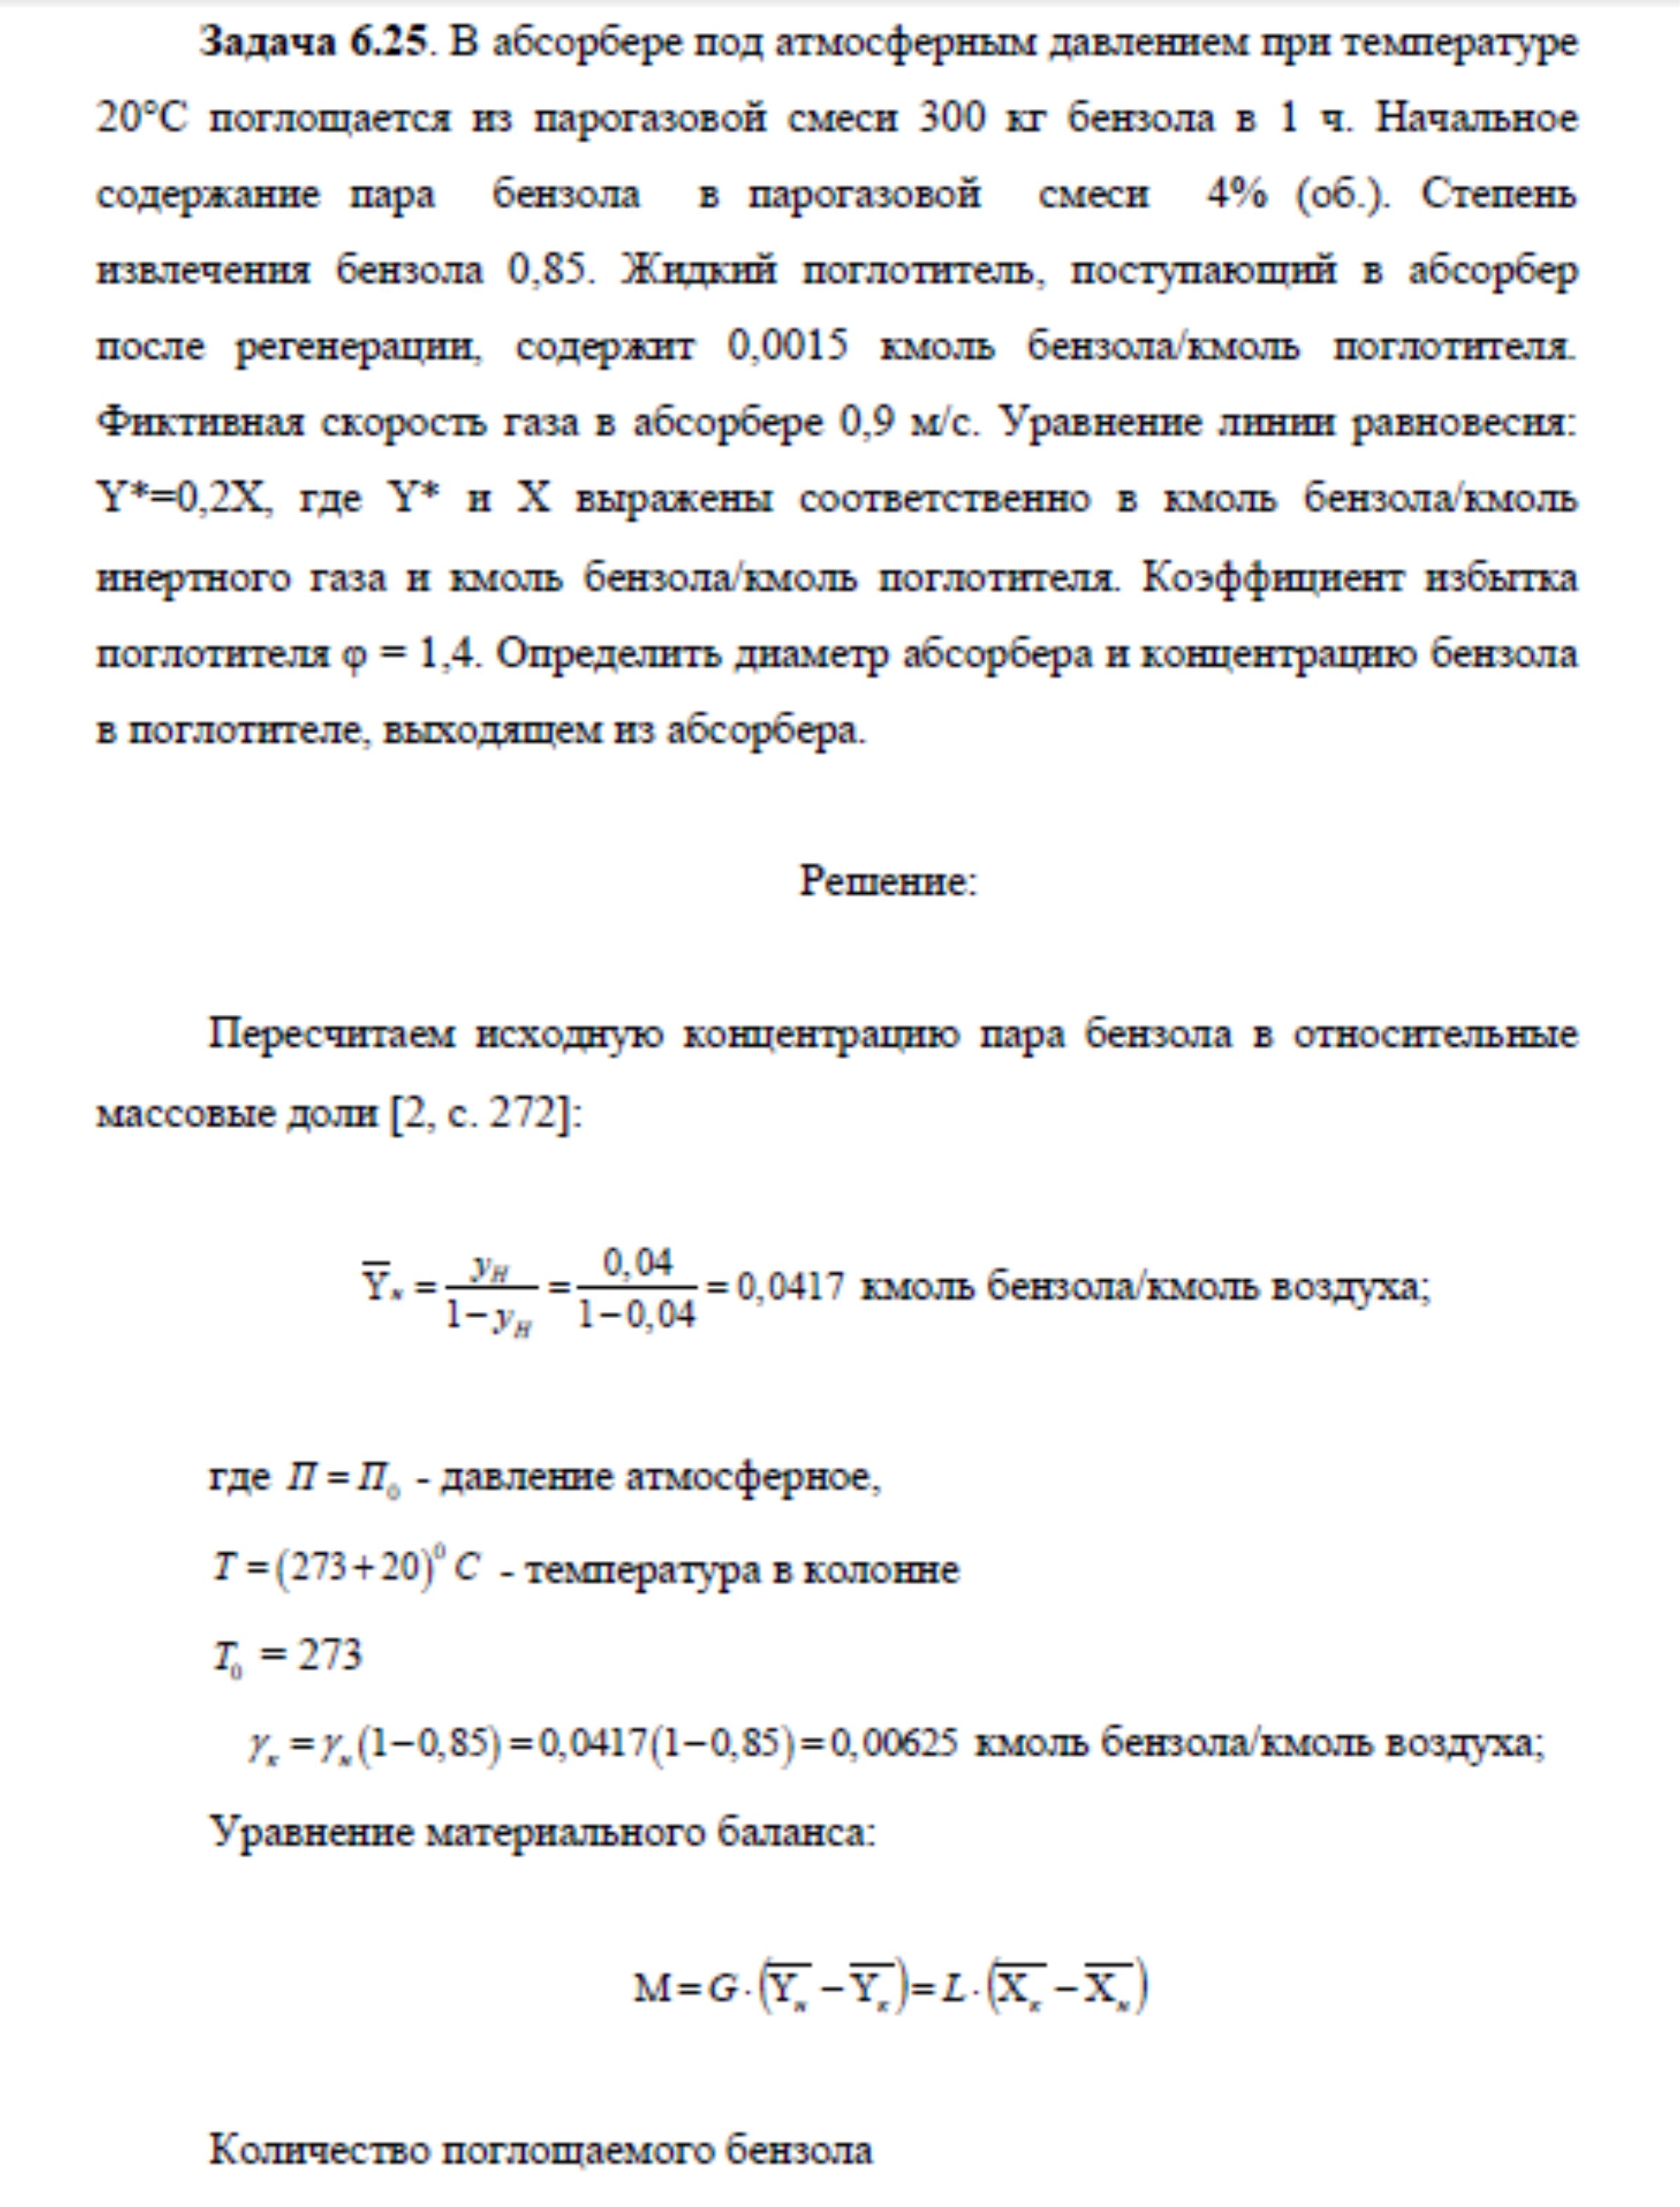 Решение задачи 6.25 по ПАХТ из задачника Павлова Романкова Носкова